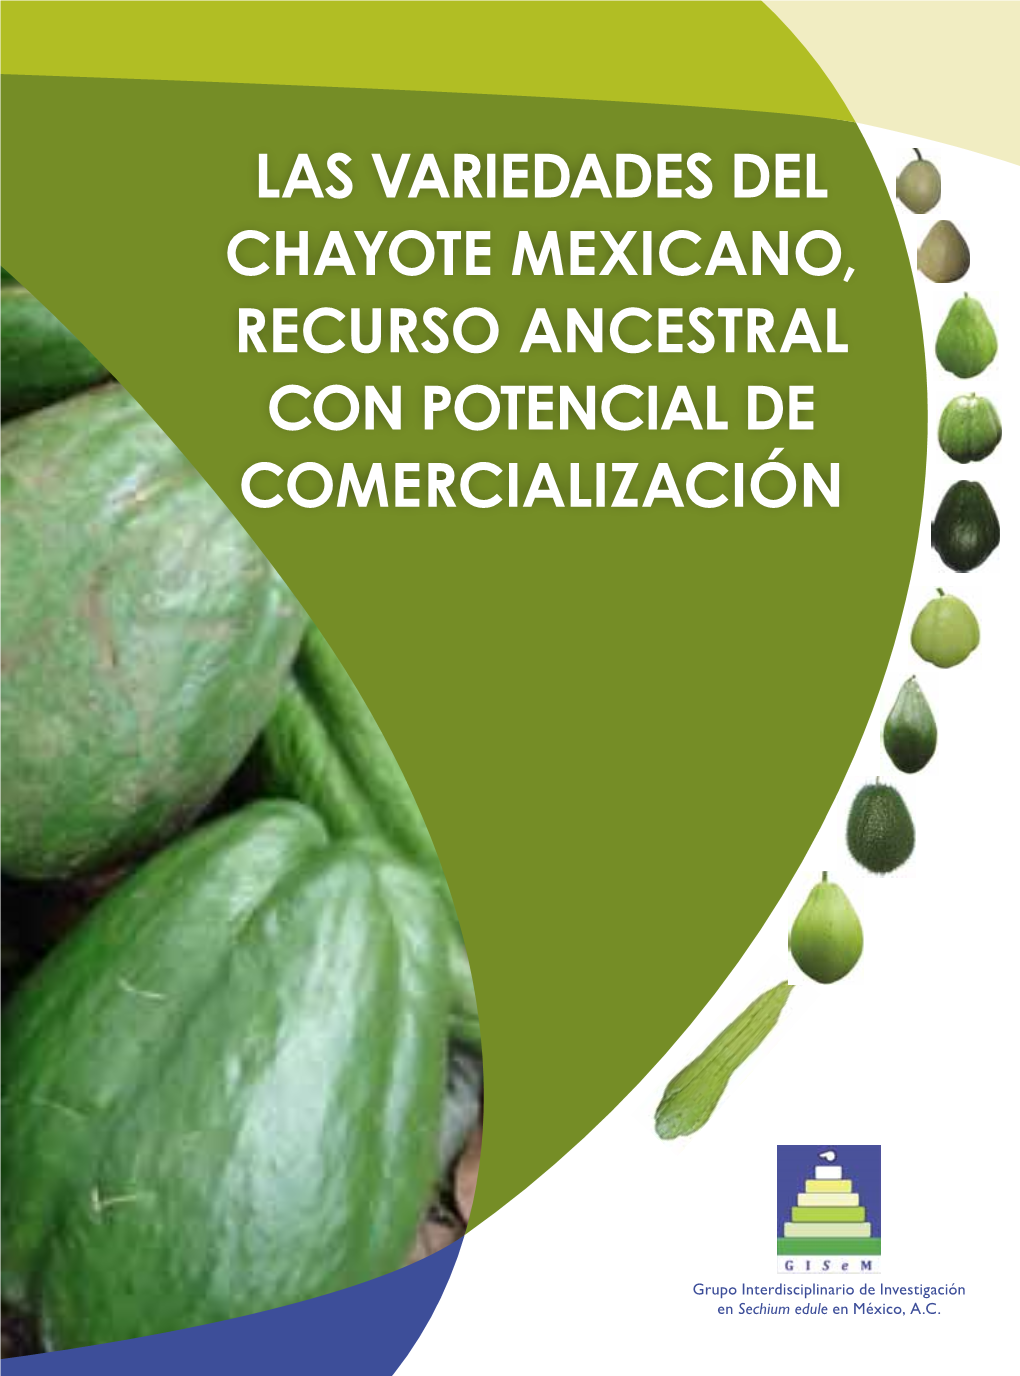 Las Variedades Del Chayote Mexicano, Recurso Ancestral Con Potencial De Comercialización